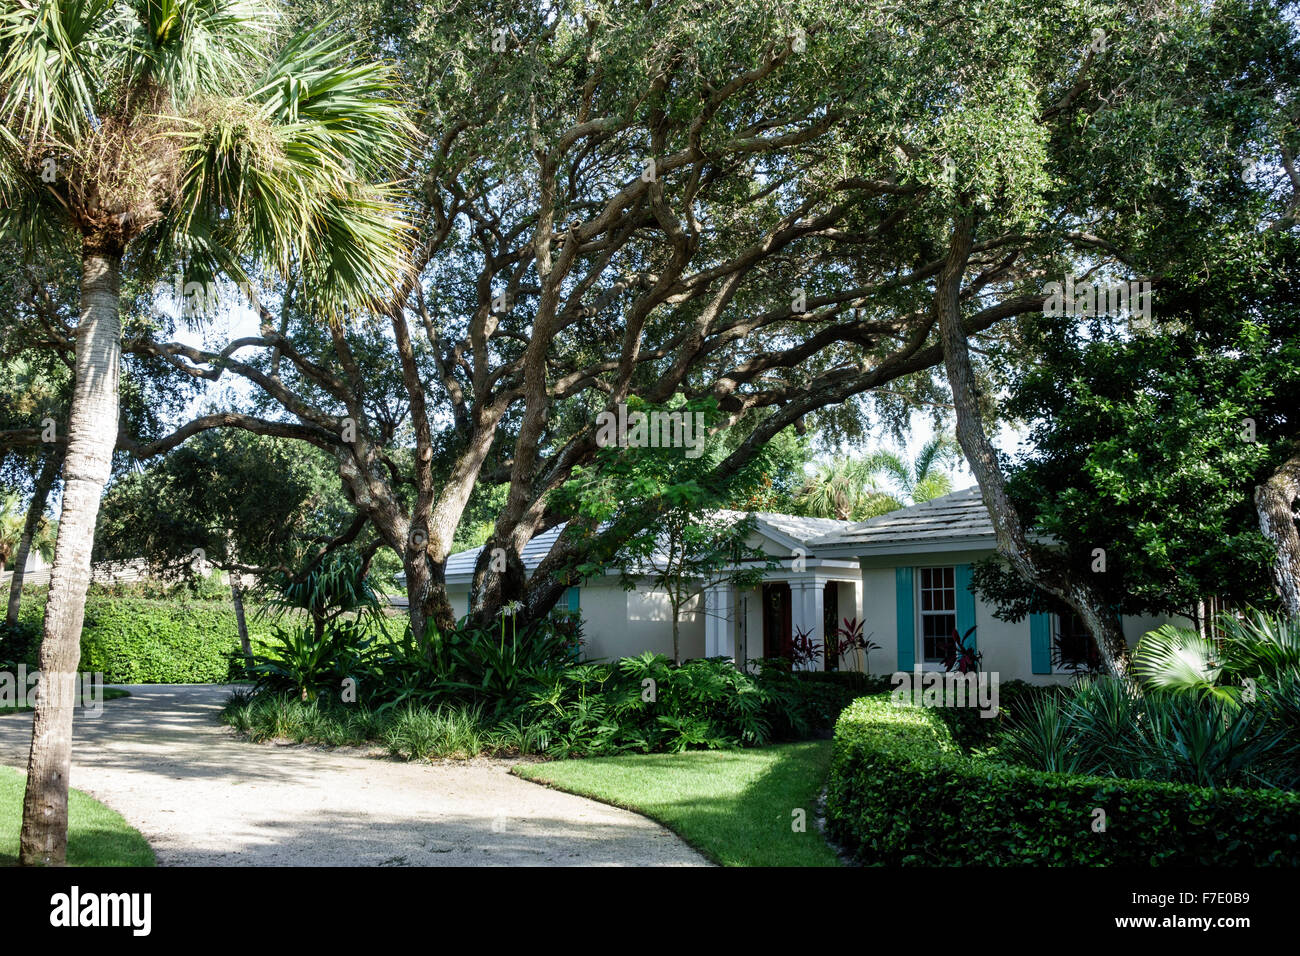 Vero Beach Florida, North Hutchinson Orchid Island, Haushäuser Häuser Häuser Residenz, Haus, leben Eichen Bäume, Besucher reisen Reise tou Stockfoto